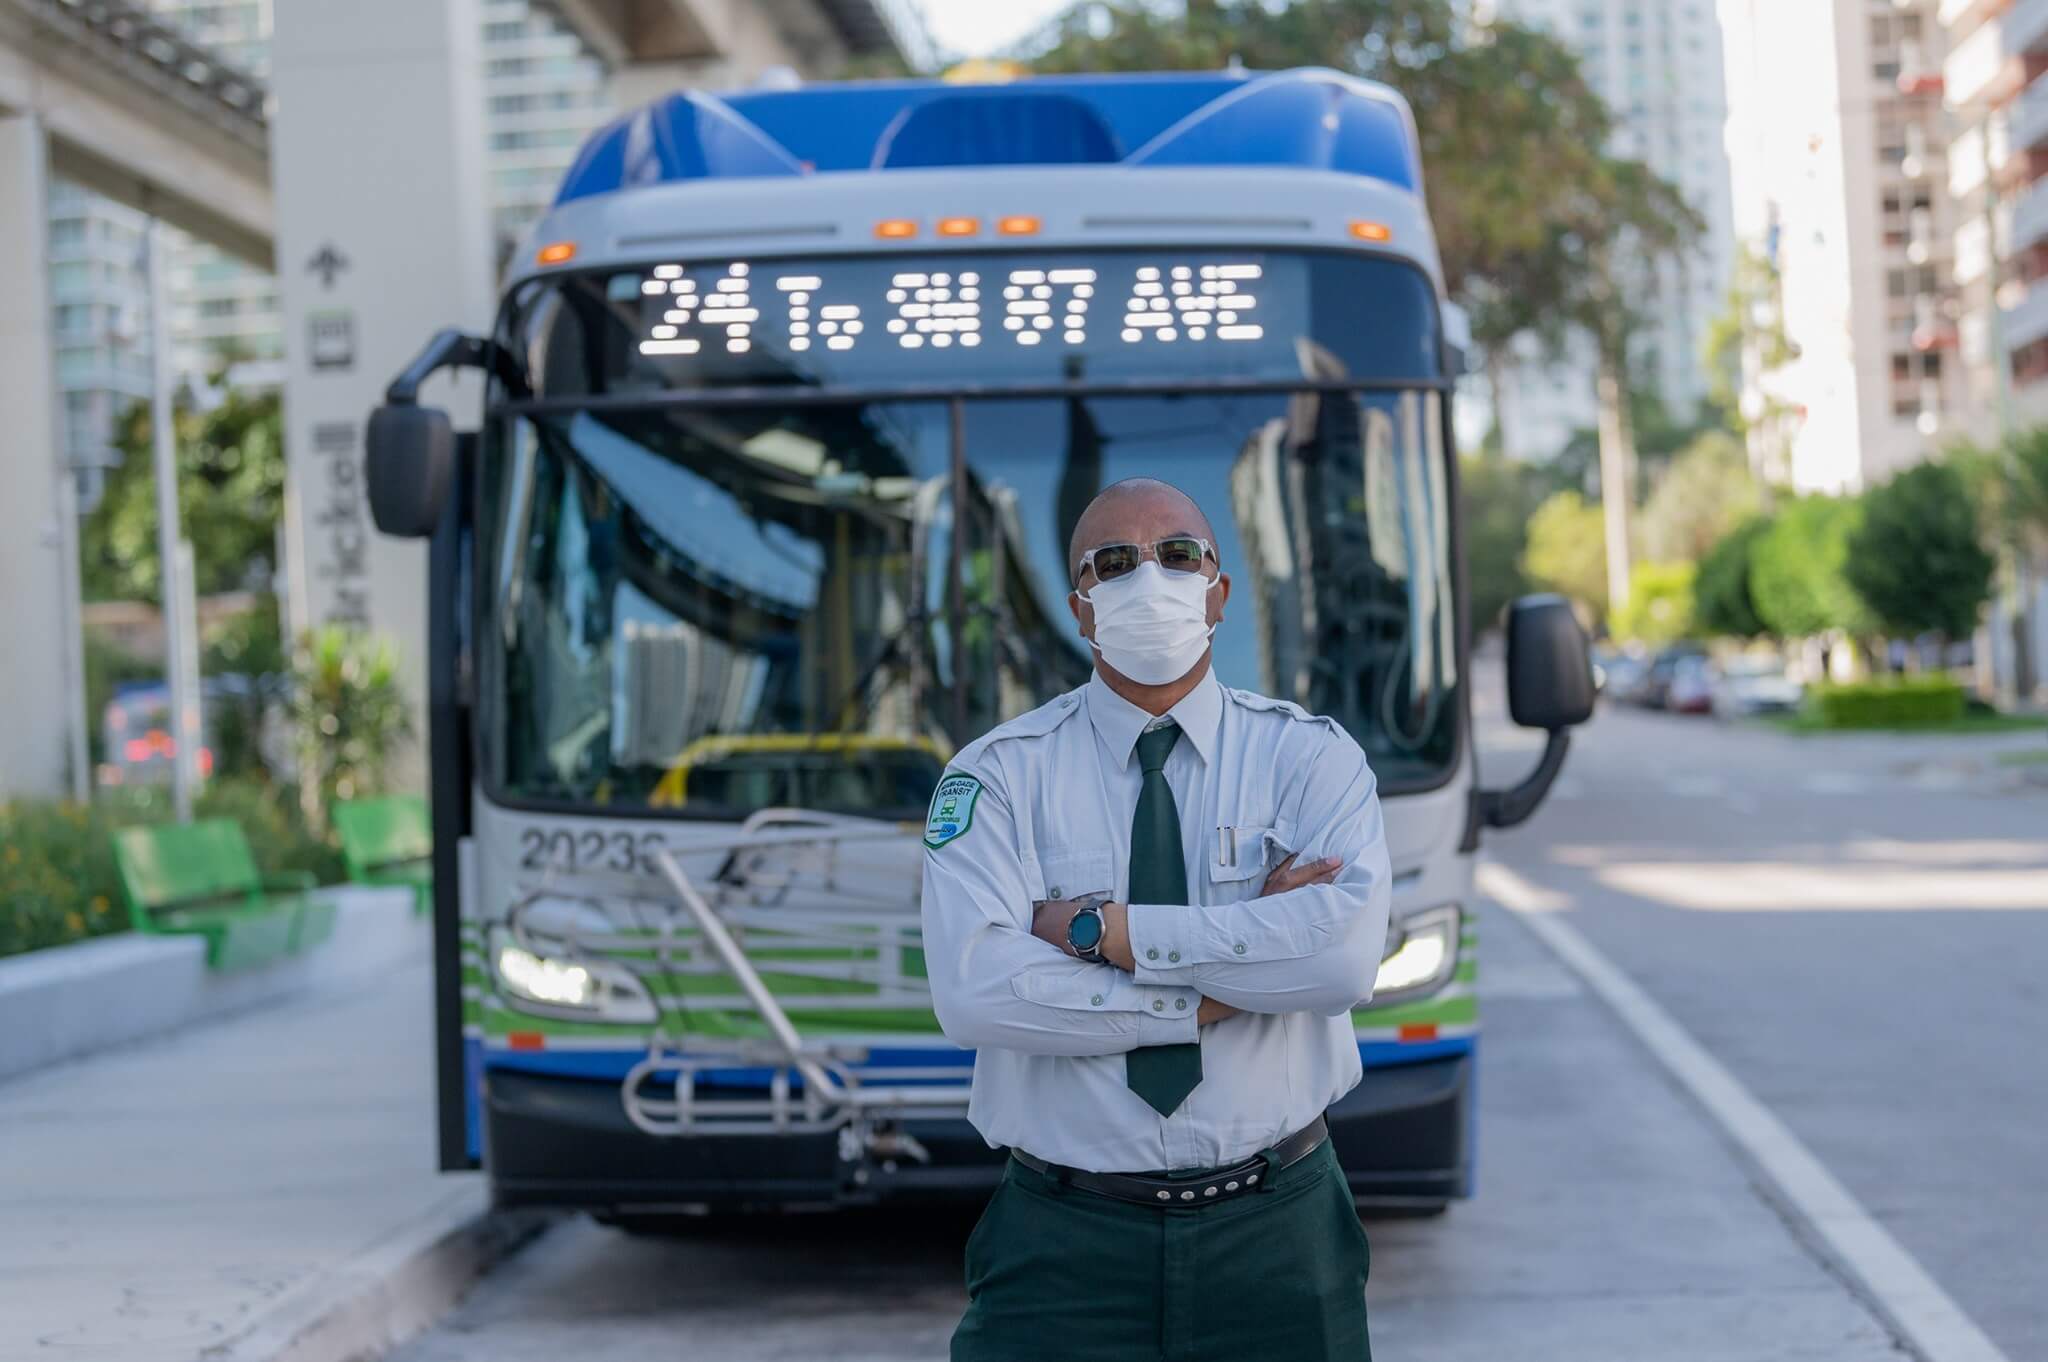 Miami-Dade Transit Bus Operator